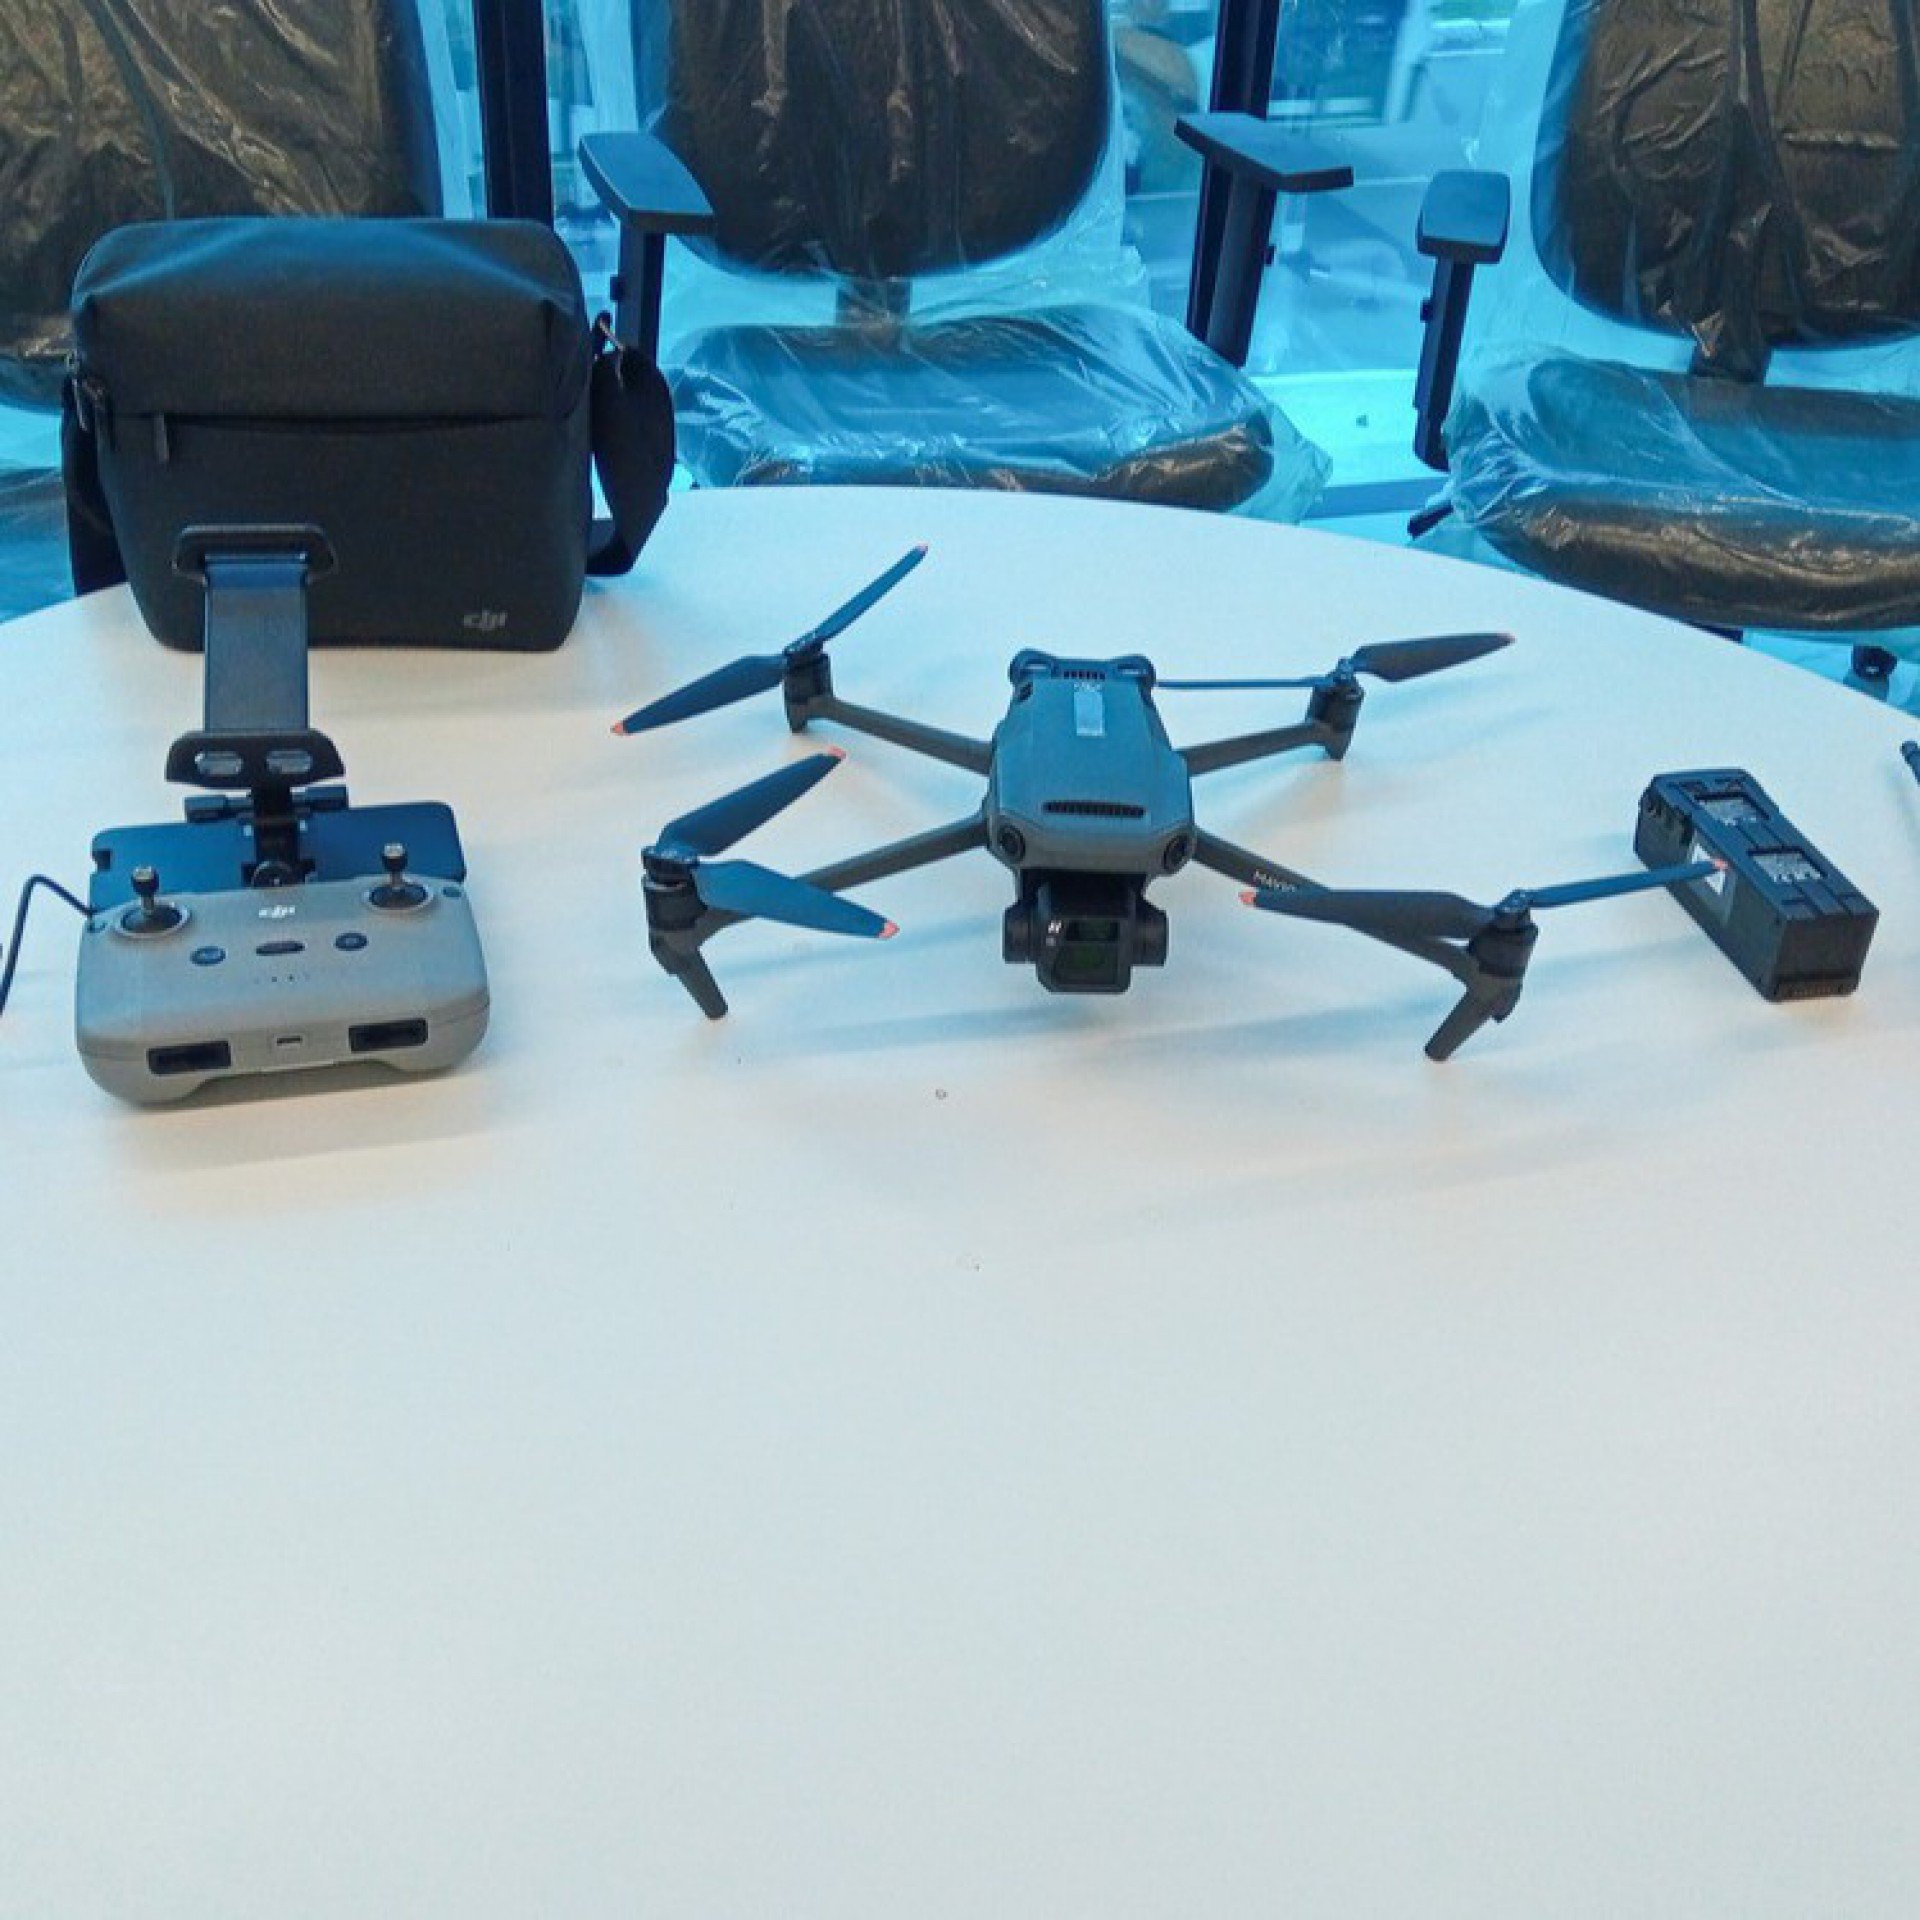 Drones serão ferramentas utilizadas no futuro Centro de Controle Operacional - PMM